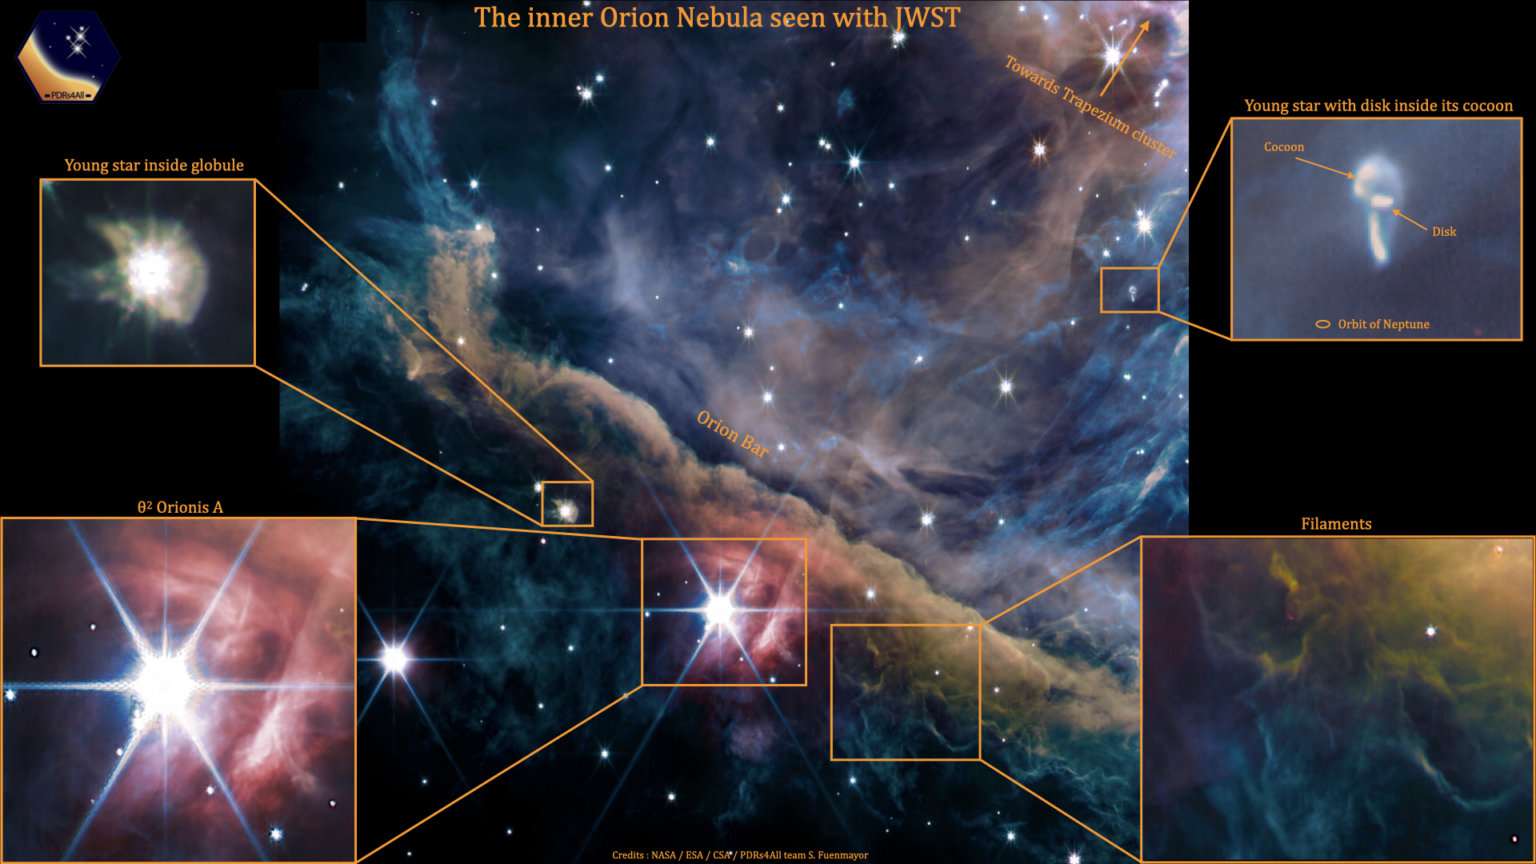 Zdjęcie okolicy centrum Mgławicy Oriona wykonane przez Kosmiczny Teleskop Jamesa Webba z zaznaczonym położeniem następujących, ciekawych obiektów: panel góra-prawo - młoda gwiazda HST-10 nadal akreująca materię z dysku pyłowo-gazowego; panel dół-prawo - wijące się włókna oświetlonej materii, składającej się głównie z molekuł węglowodorowych i cząsteczkowego wodoru; panel w centrum – młody wielokrotny układ gwiazdowy θ2Orionis A oświetla obłoki pyłu znajdujące się w tle; panel na lewo od centrum - młoda gwiazda nadal jest zanurzona wewnątrz globuli, w której powstaje. Źródło: NASA / ESA / CSA; Data reduction and analysis: PDRs4All ERS Team; Graphical processing: S. Fuenmayor & O. Berné